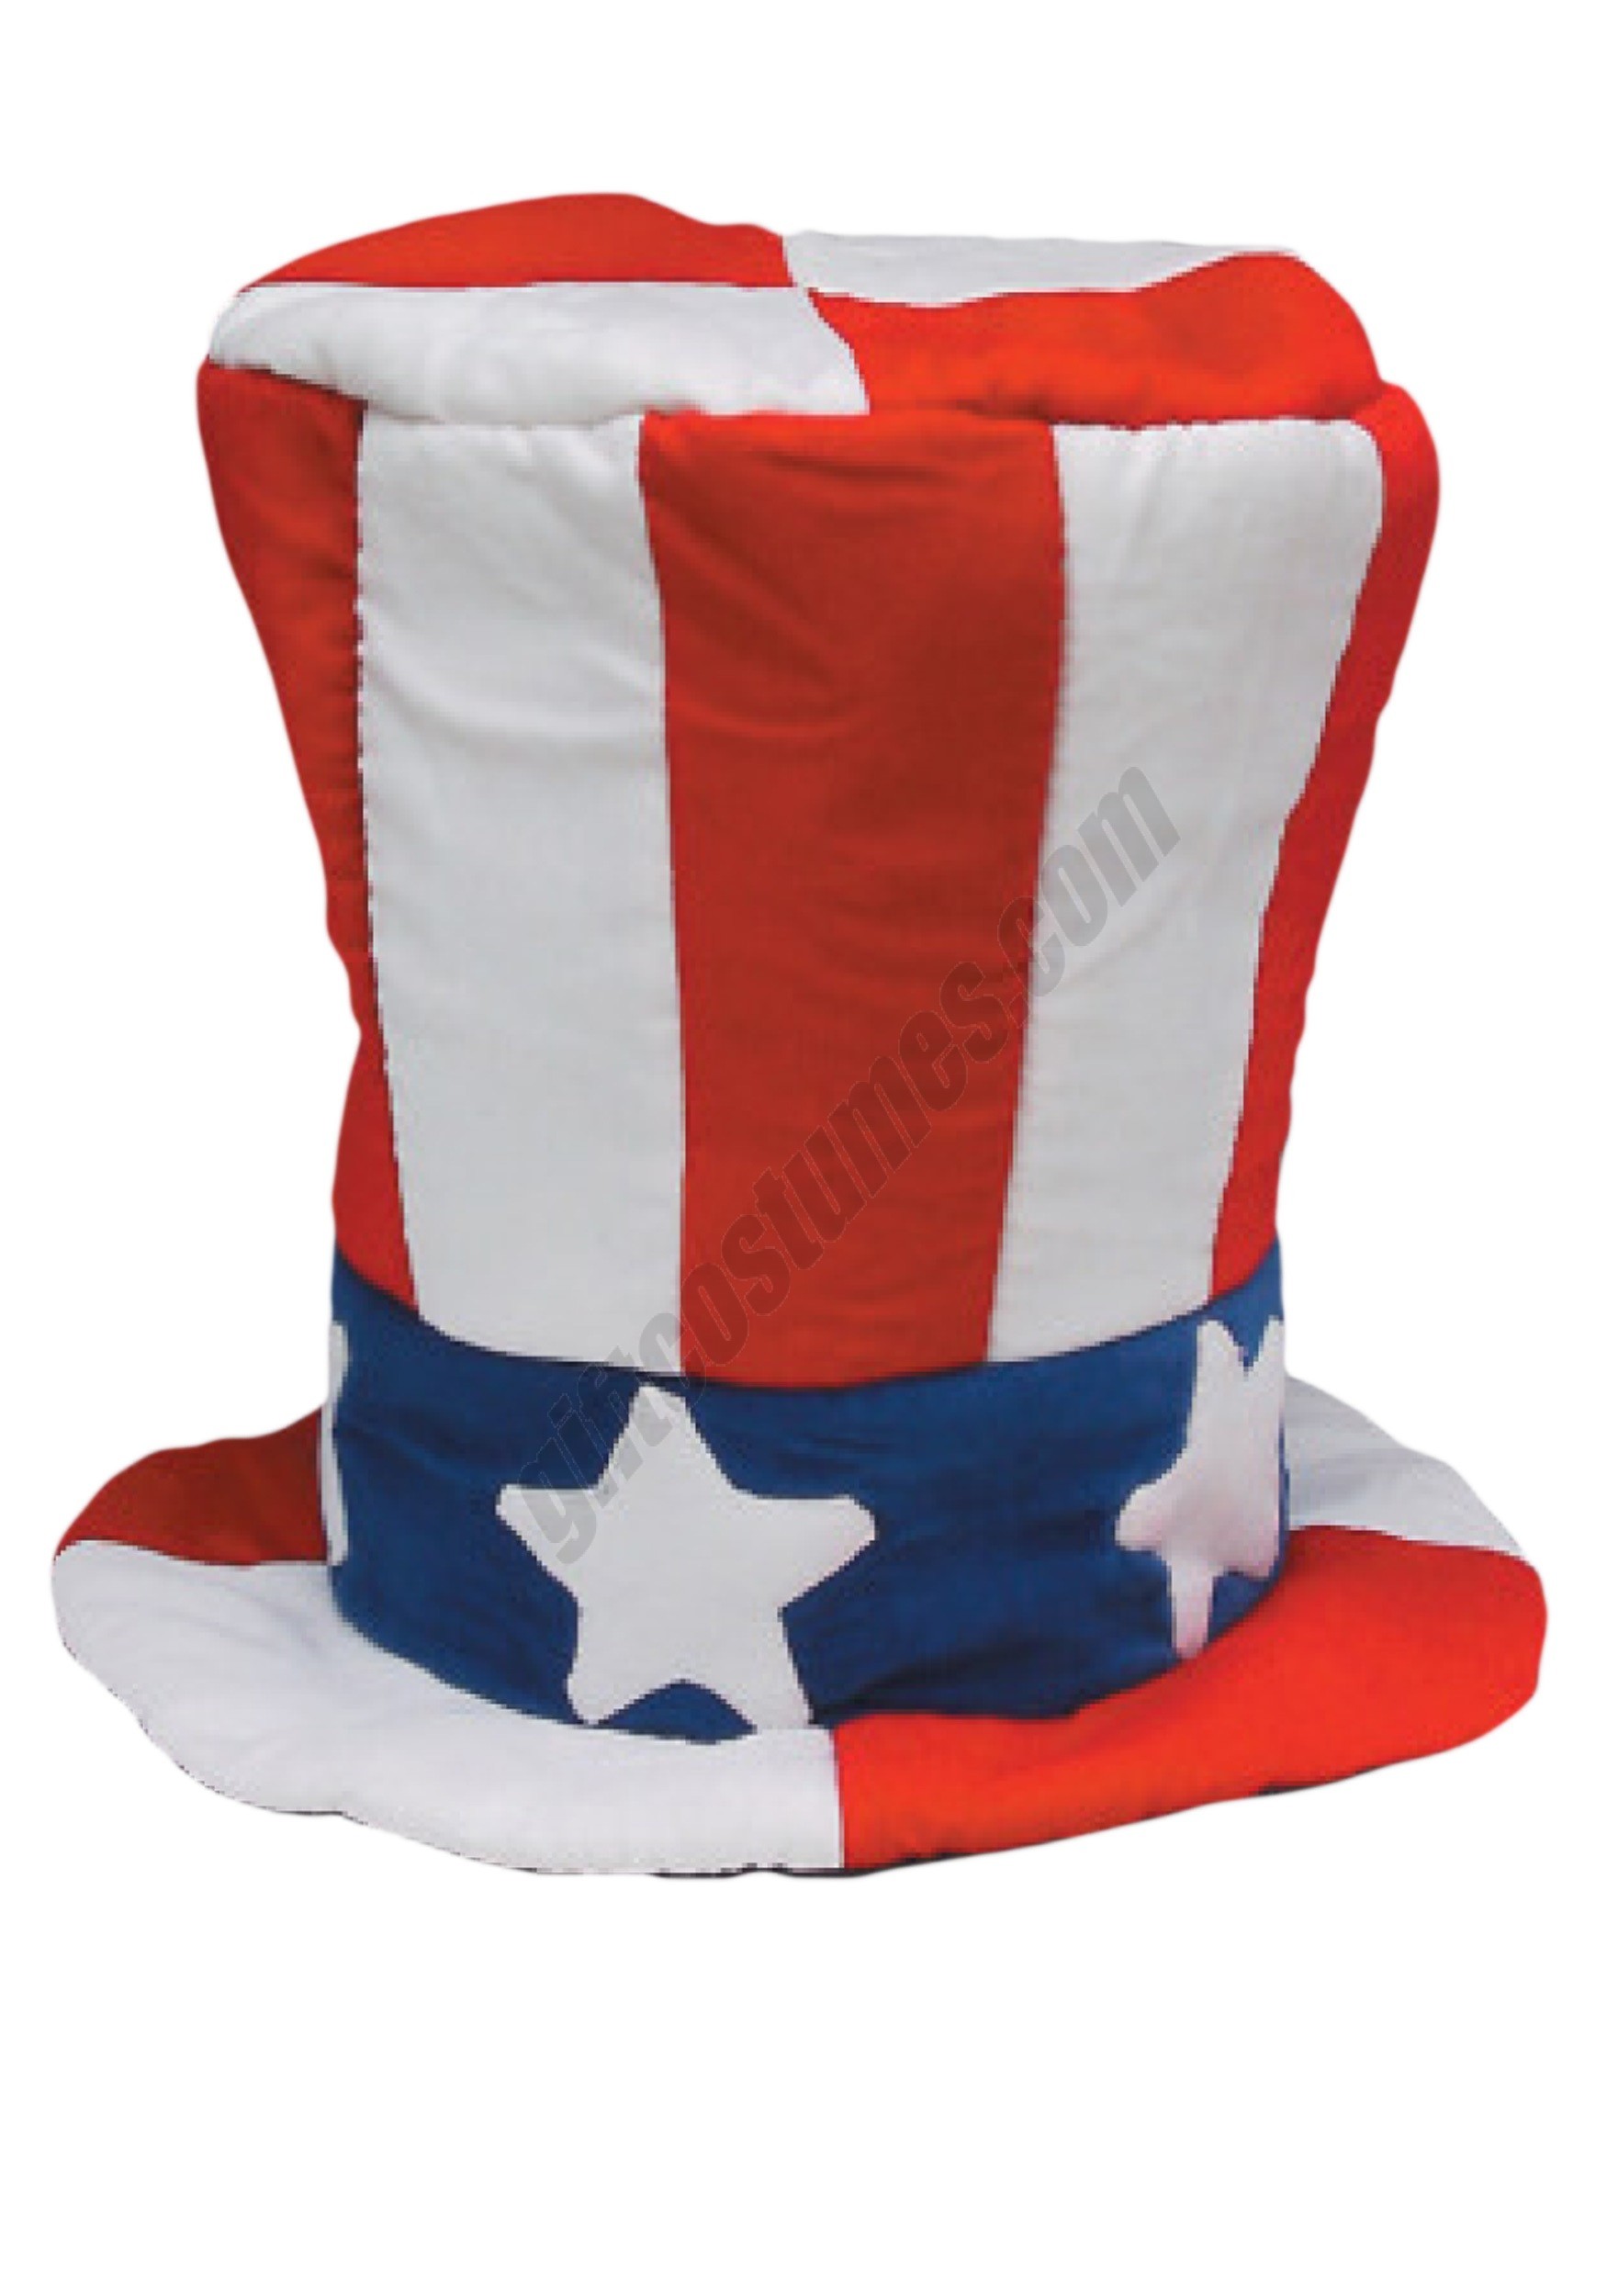 Velvet Uncle Sam Top Hat Promotions - Velvet Uncle Sam Top Hat Promotions